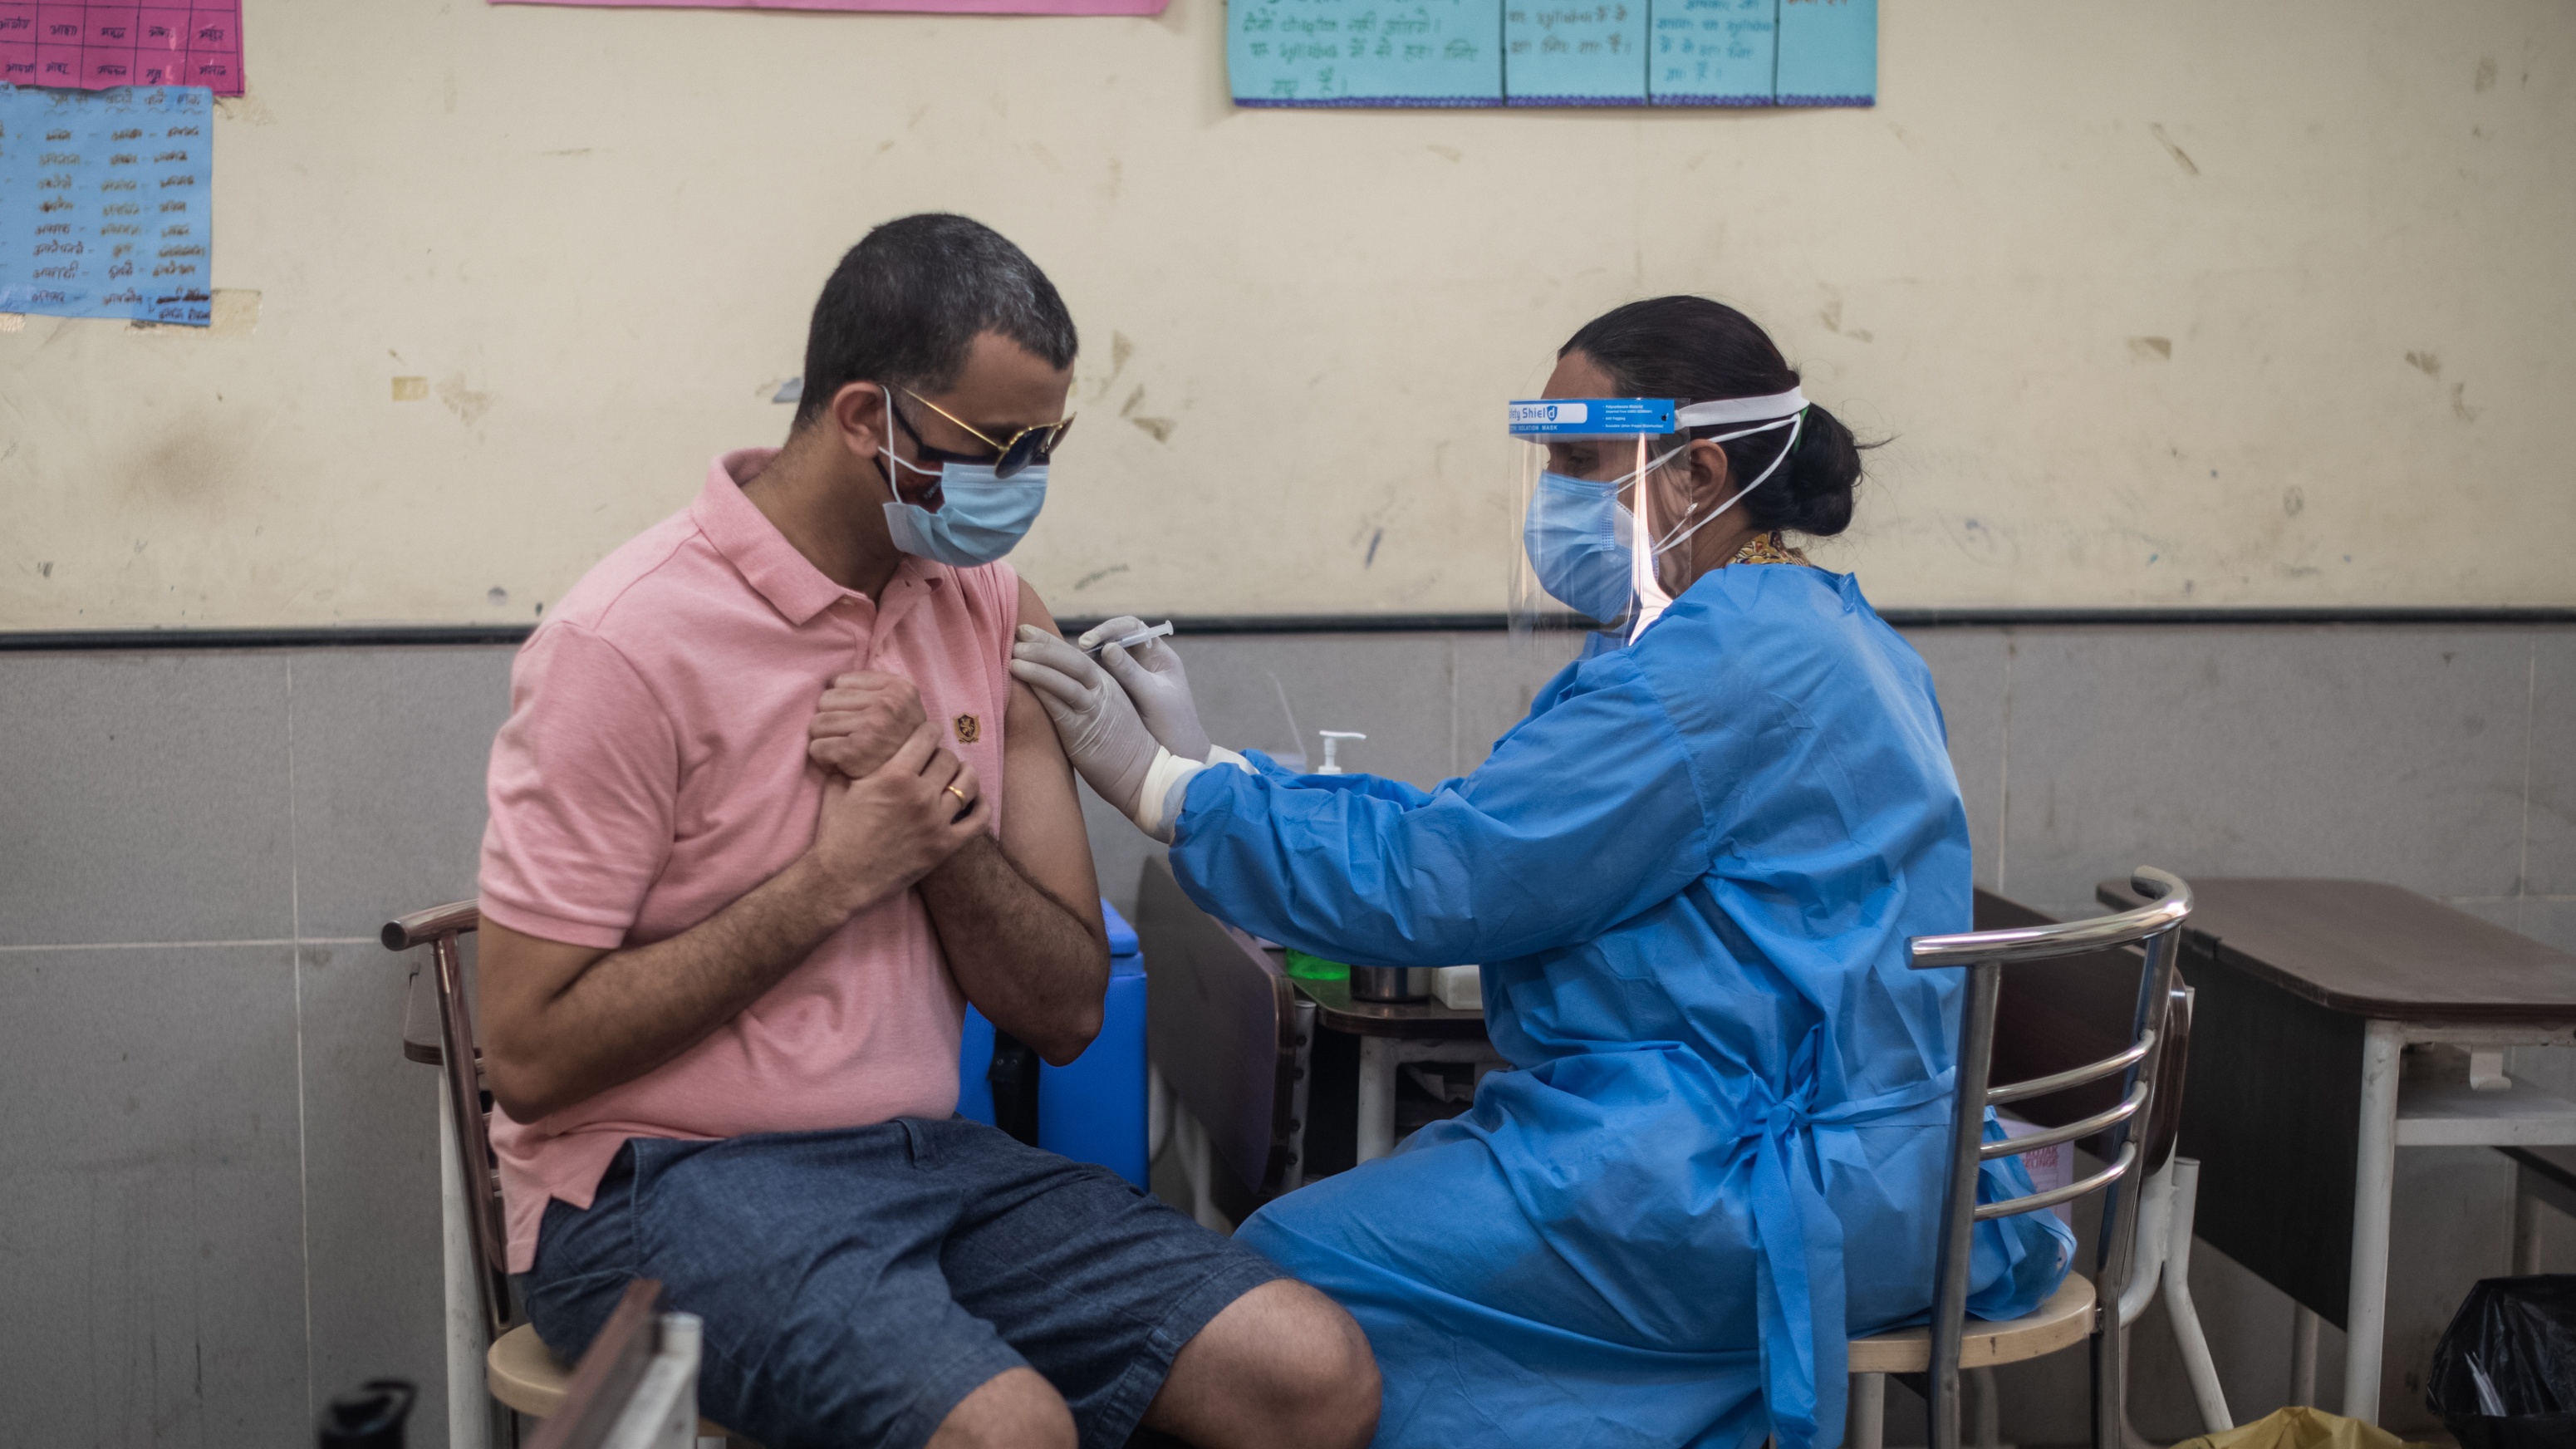 A man receives his Covid-19 vaccine in New Delhi, India